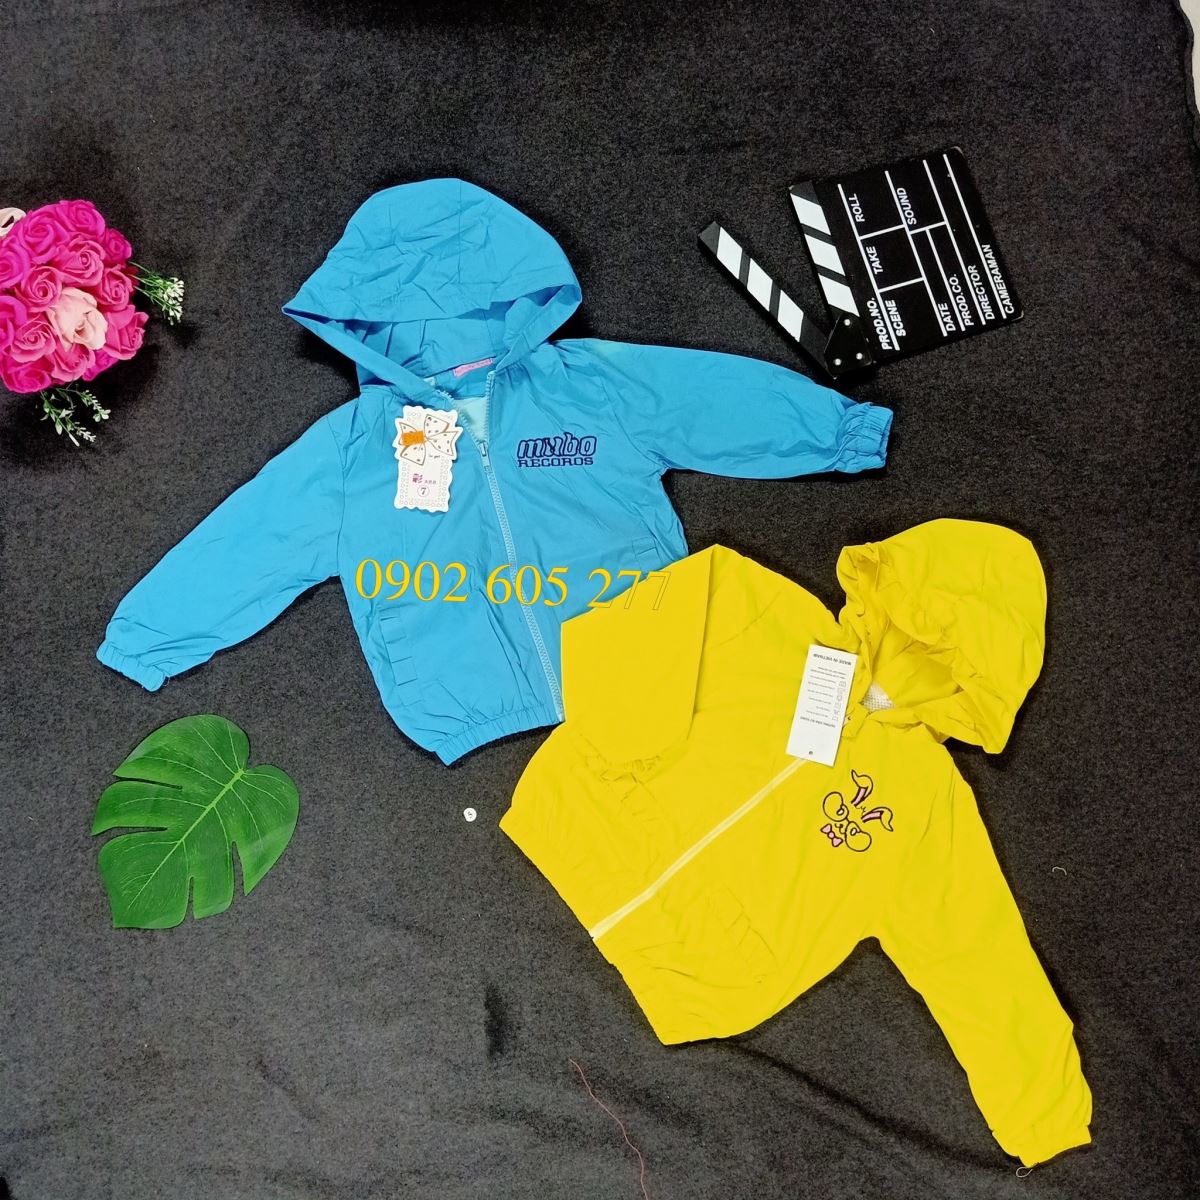 Tuyển sỉ các mẫu áo khoác gió từ thiện trẻ em ở KonTum